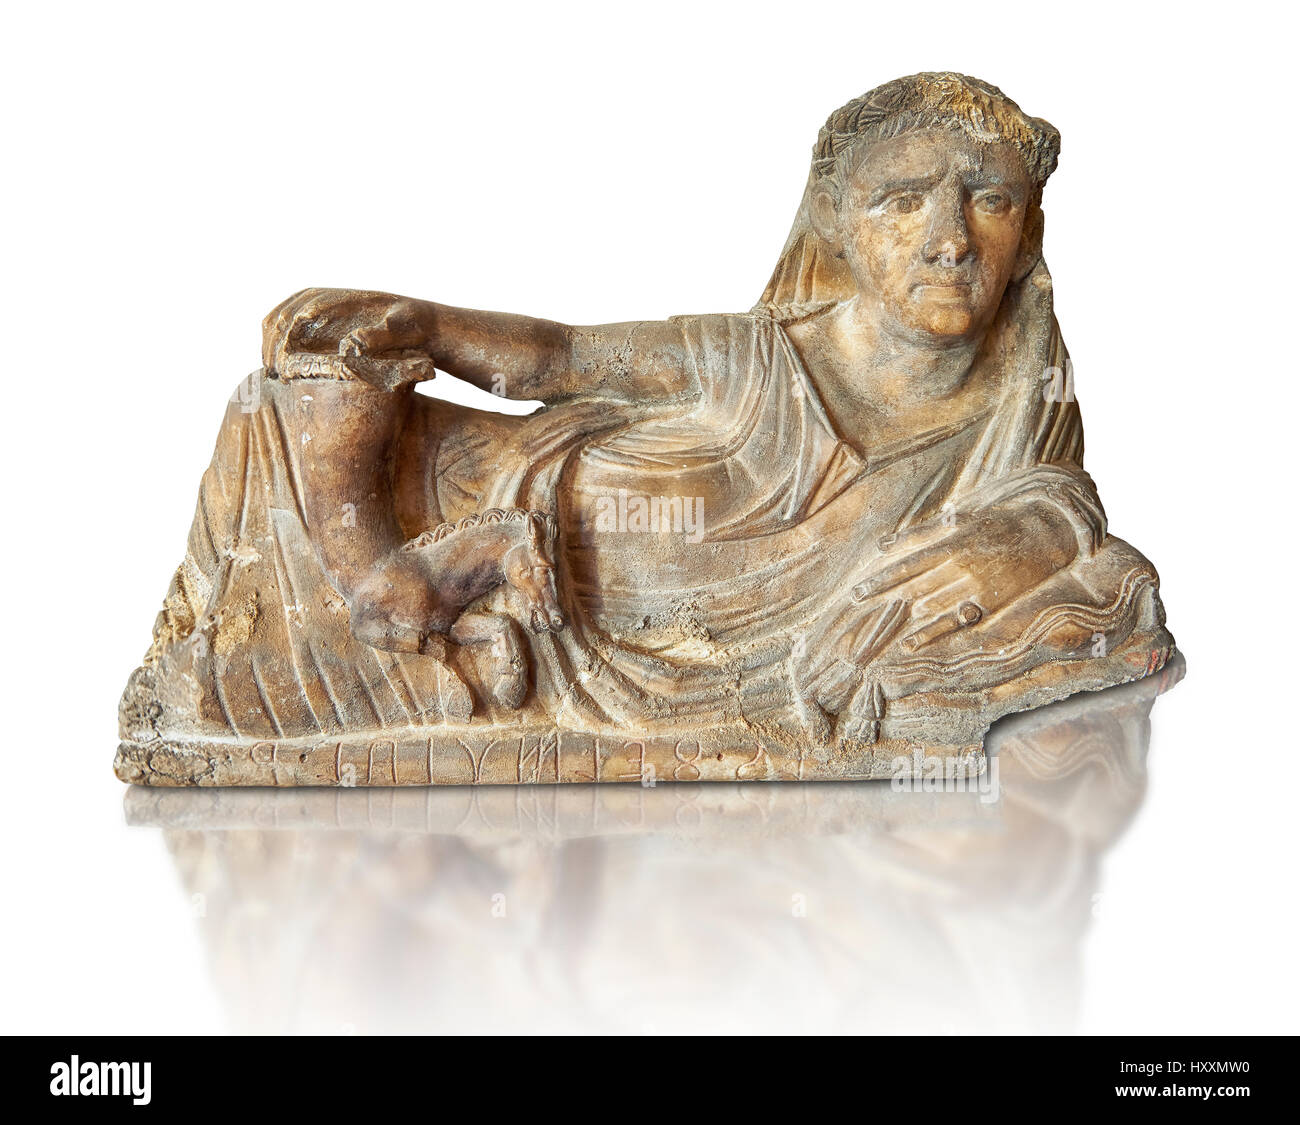 Etruskische hellenistischen Stil zurückzuführen, Funreary, Urn Abdeckung, nationale archäologische Museum, Florenz, weißer Hintergrund Stockfoto